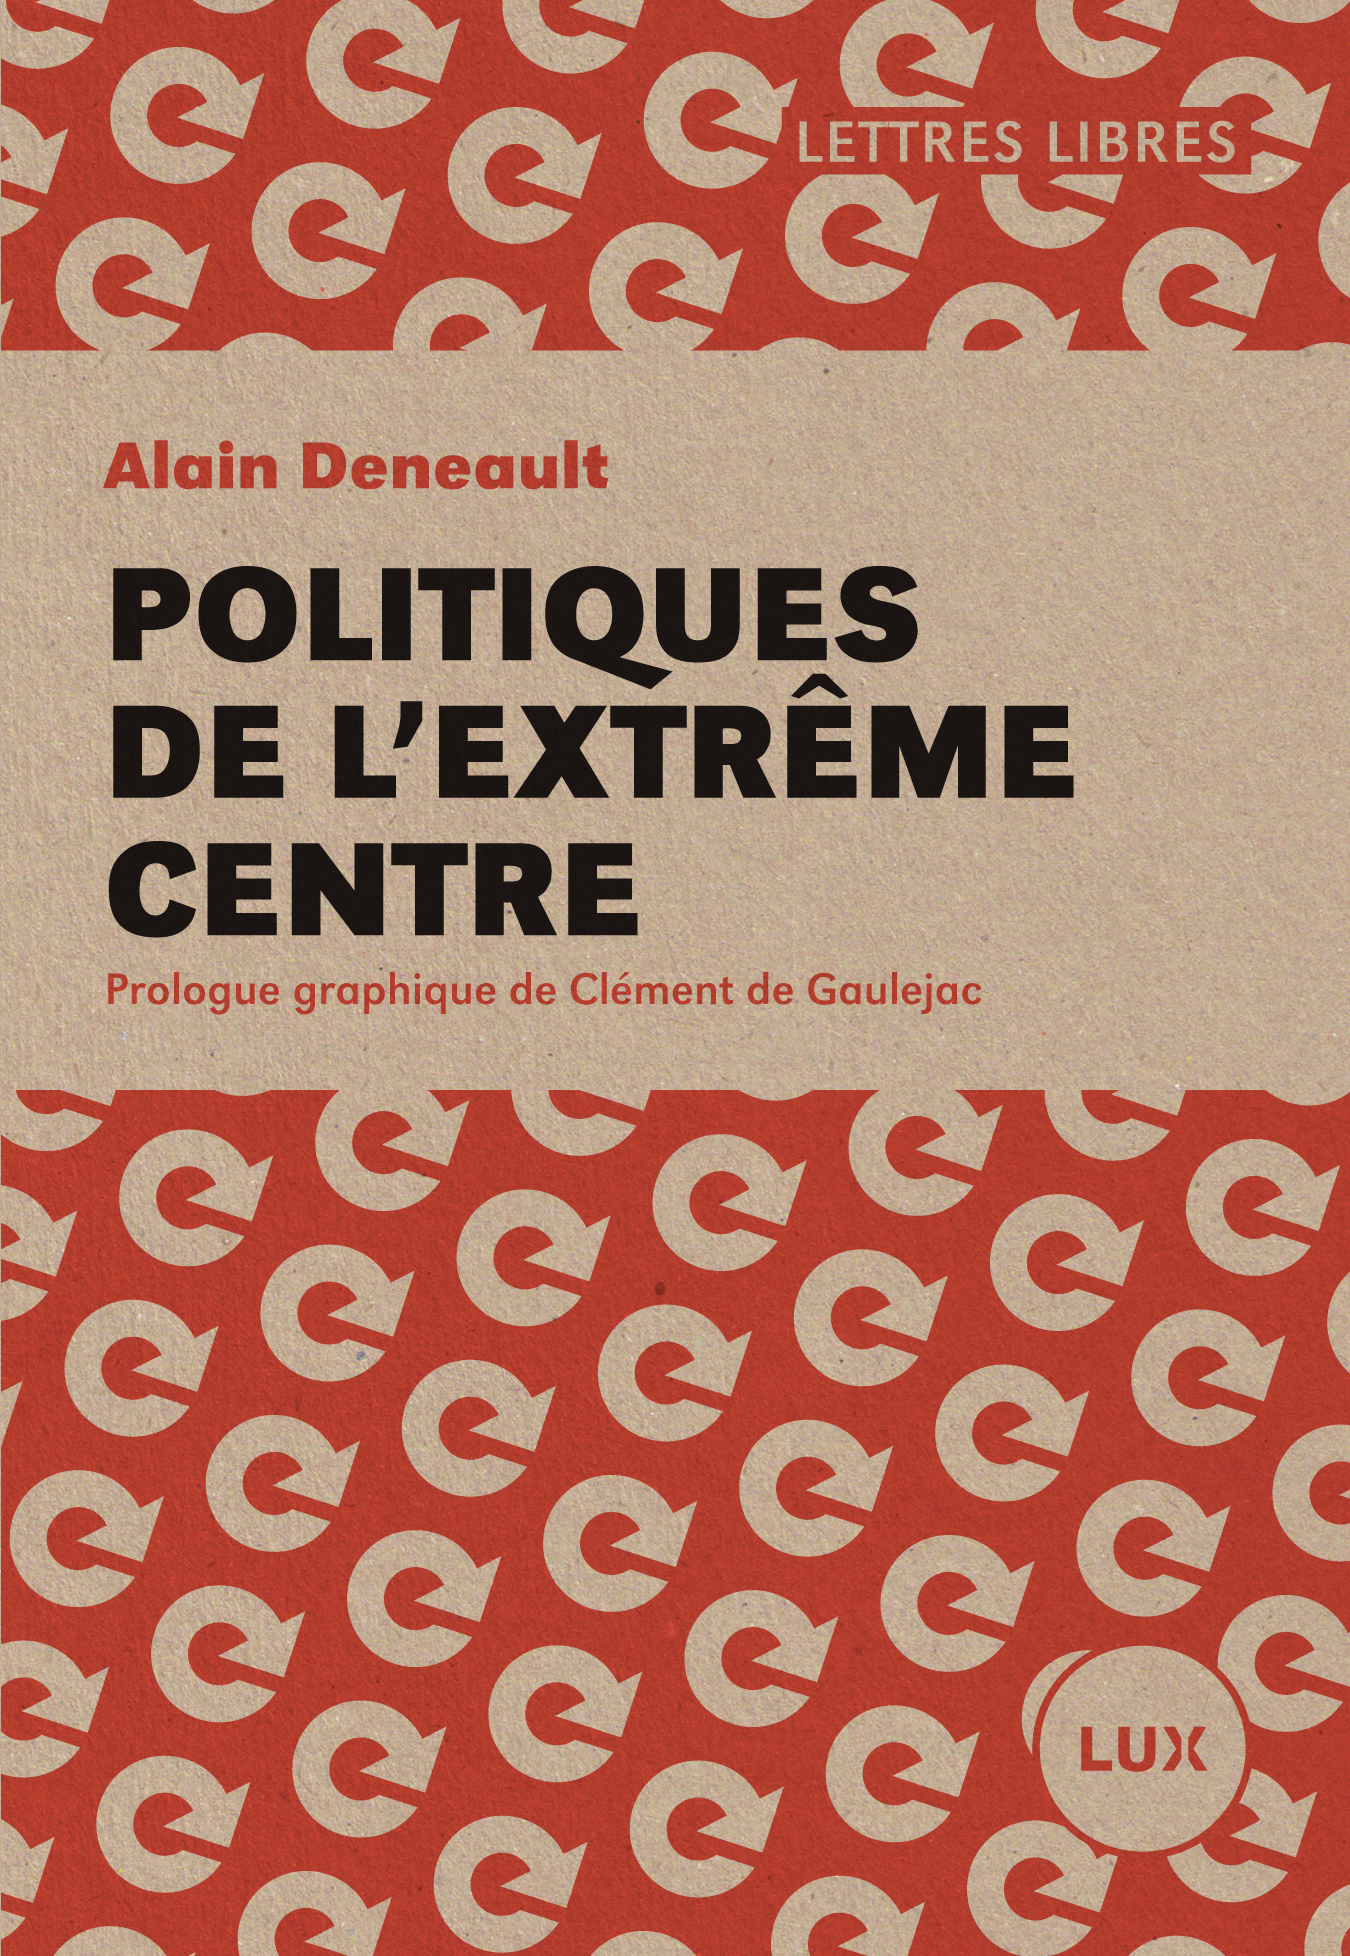 deneault_politiques-extreme-centre